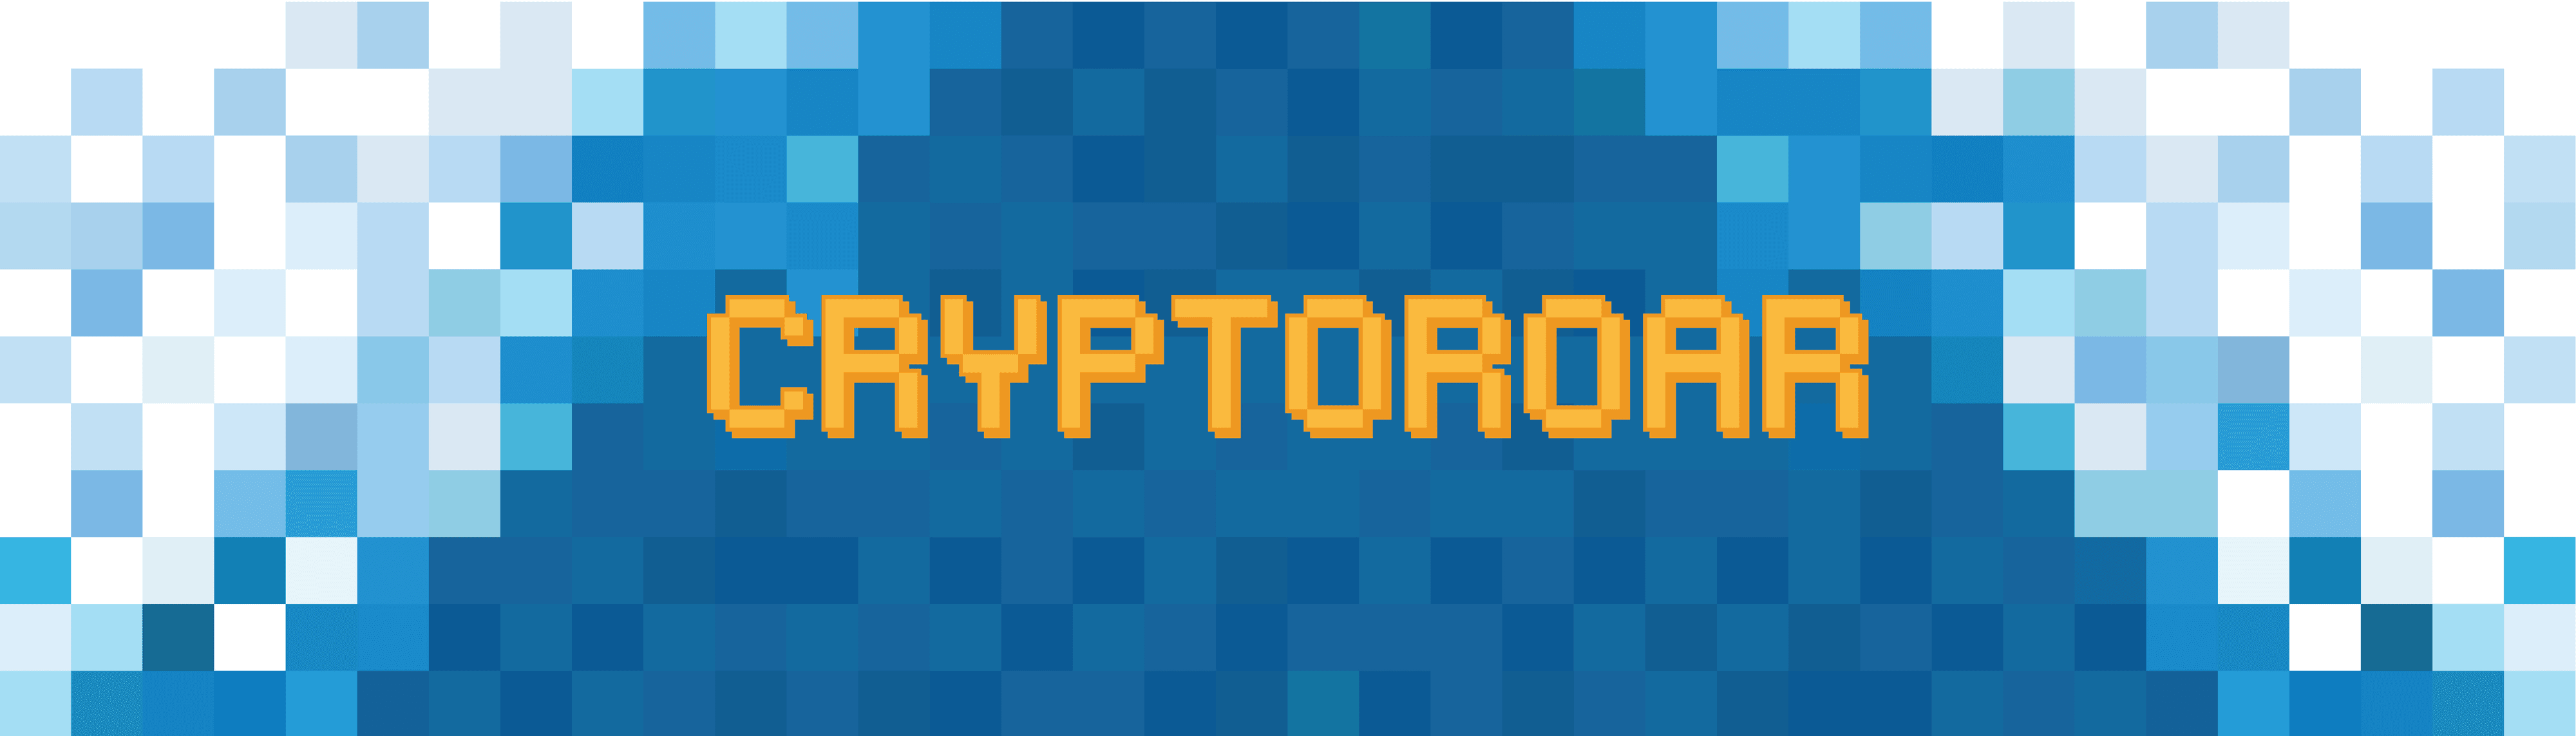 CryptoRoar banner